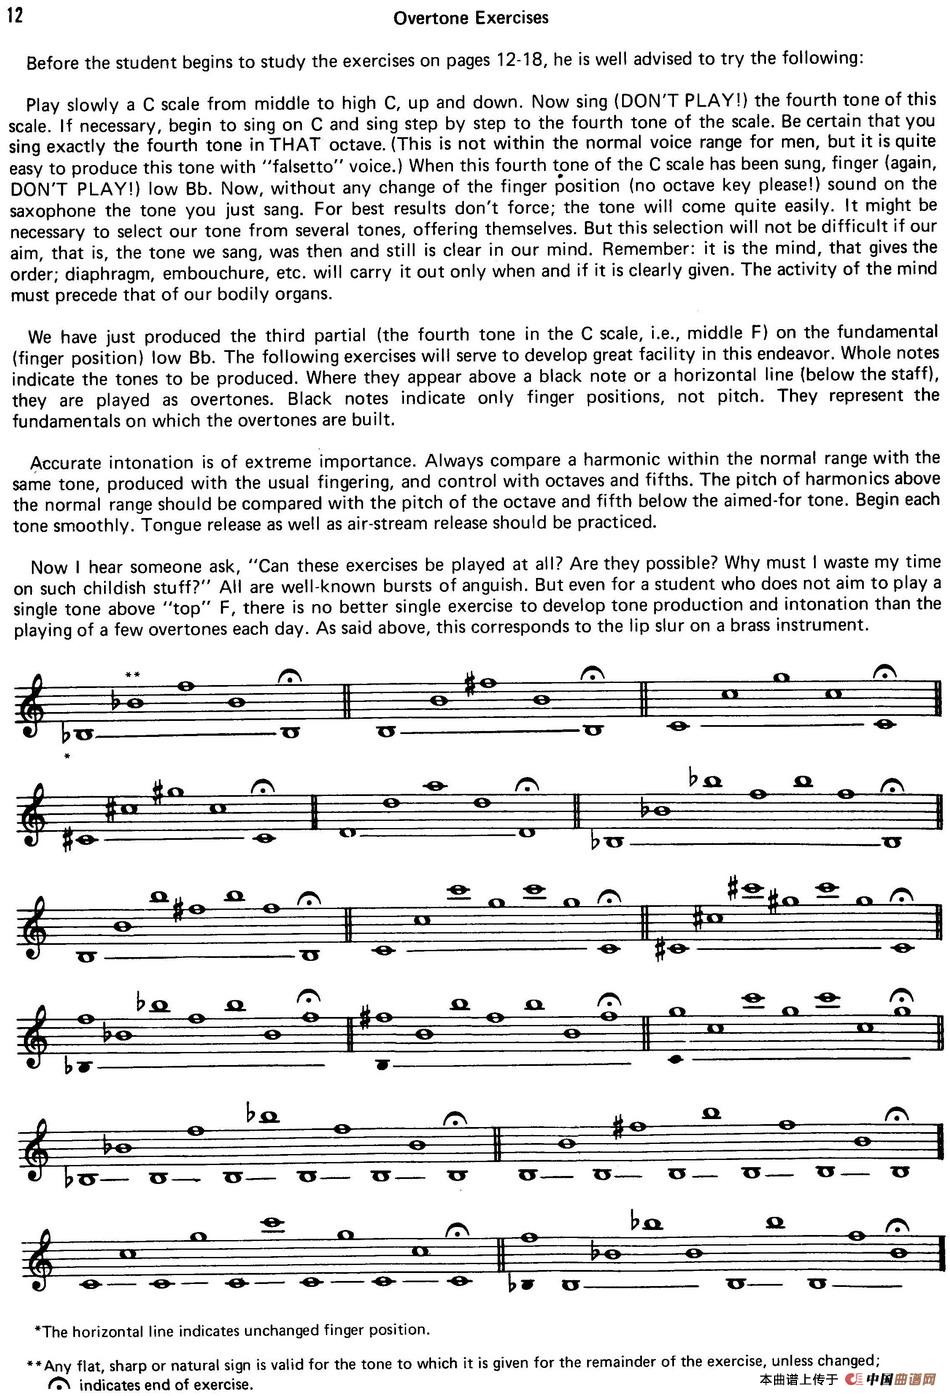 Top Tones For Sax（Methode）（萨克斯大小调音阶练习